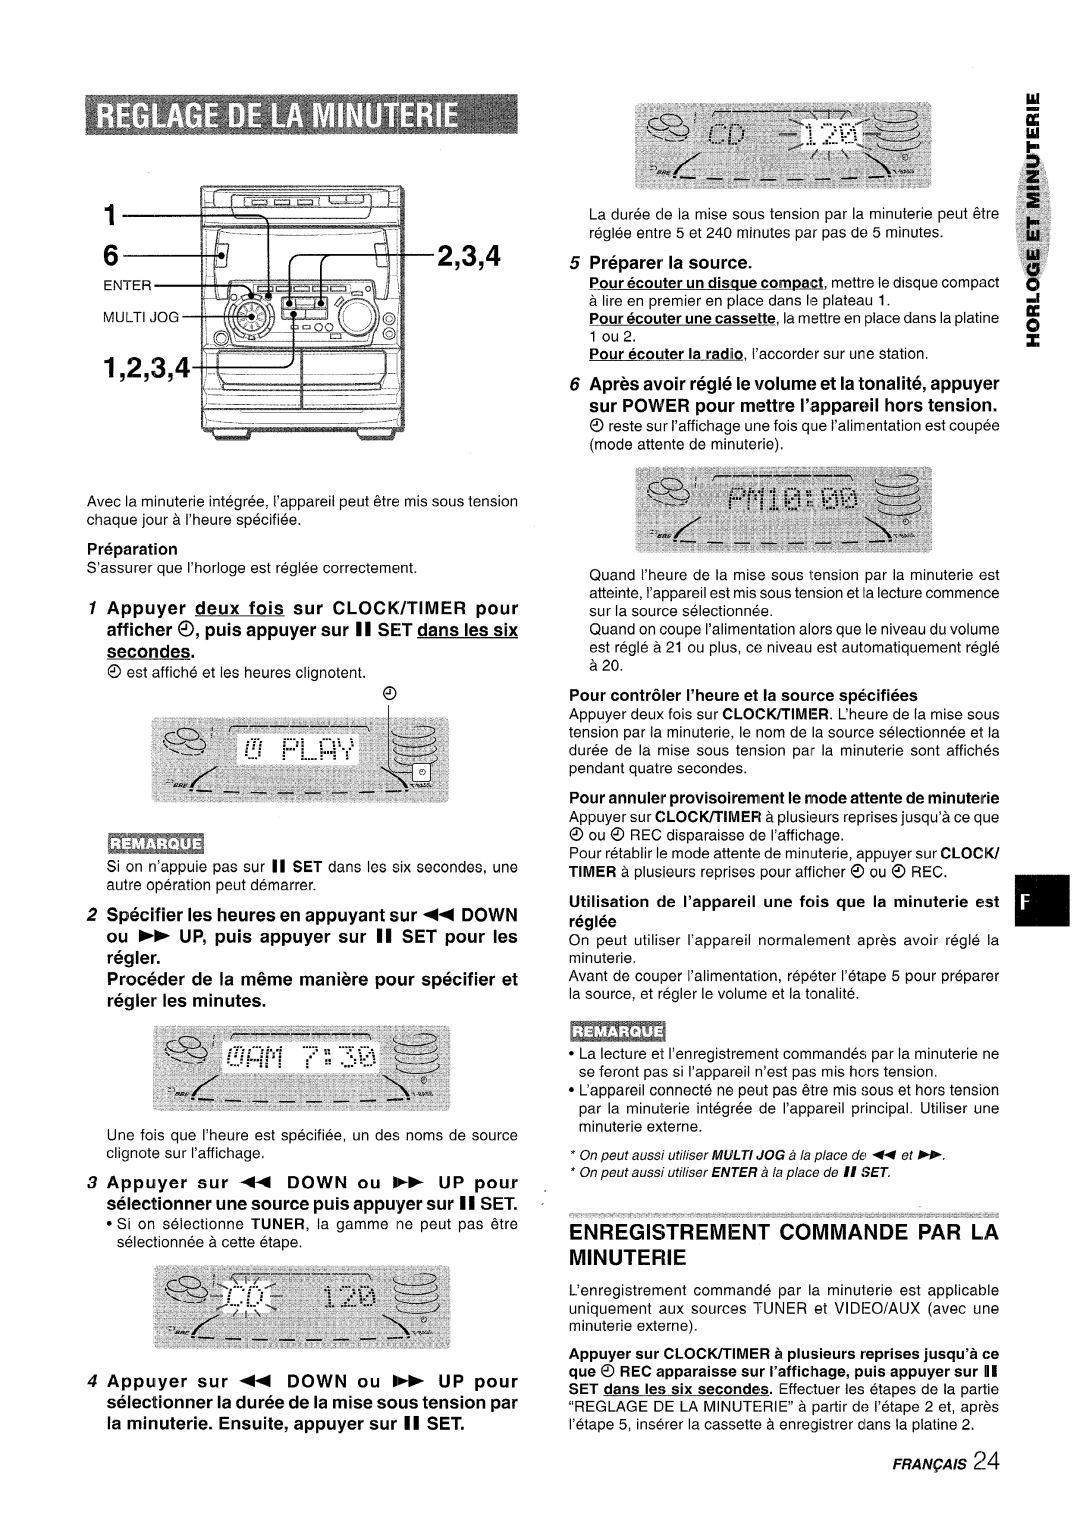 Sony NSX-A707 Enregistrement Commande Par La Minuterie, Proc6der de la m6me maniere pour specifier et regler Ies minutes 